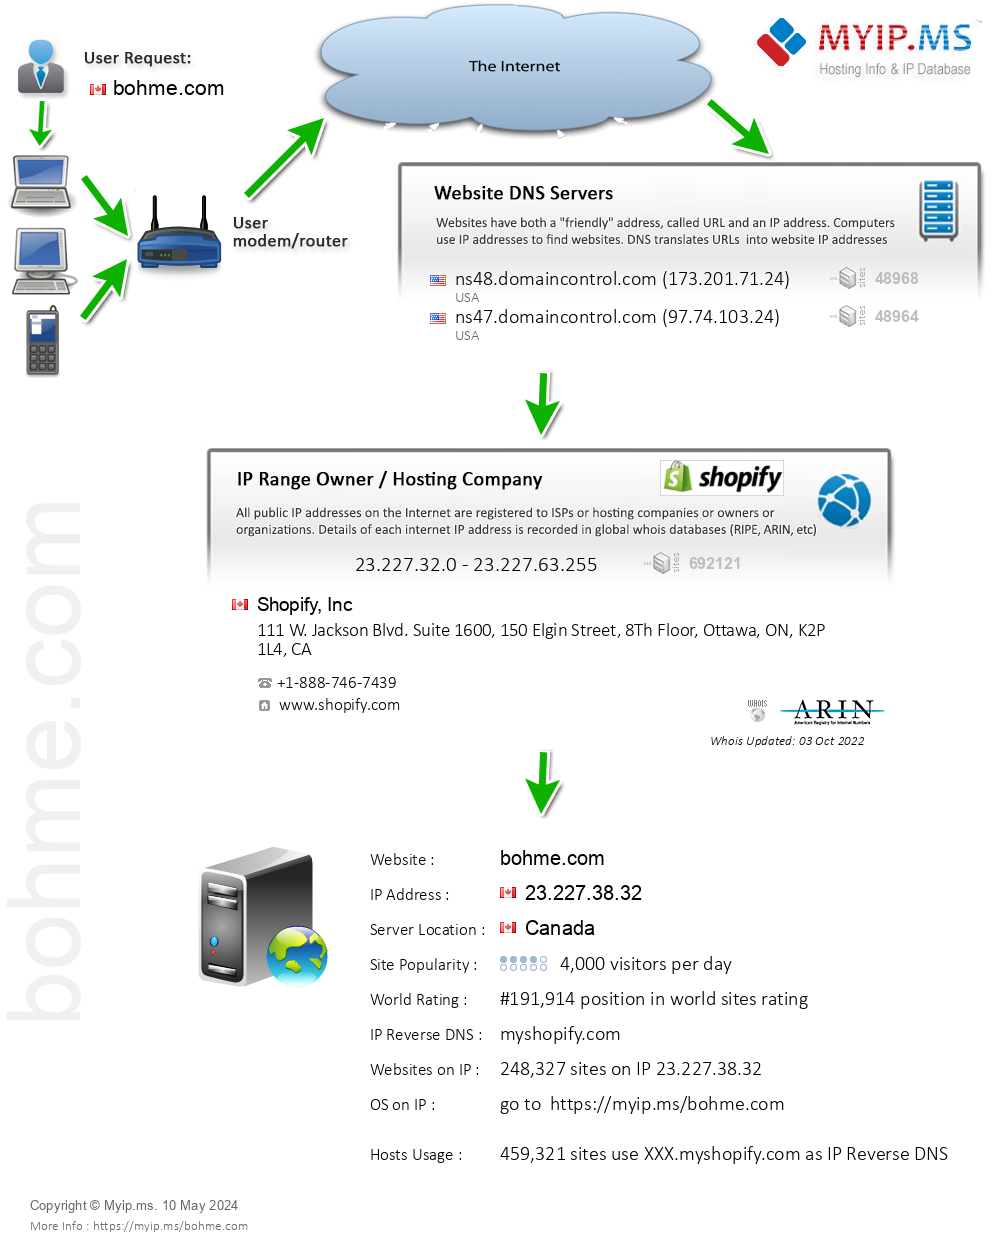 Bohme.com - Website Hosting Visual IP Diagram